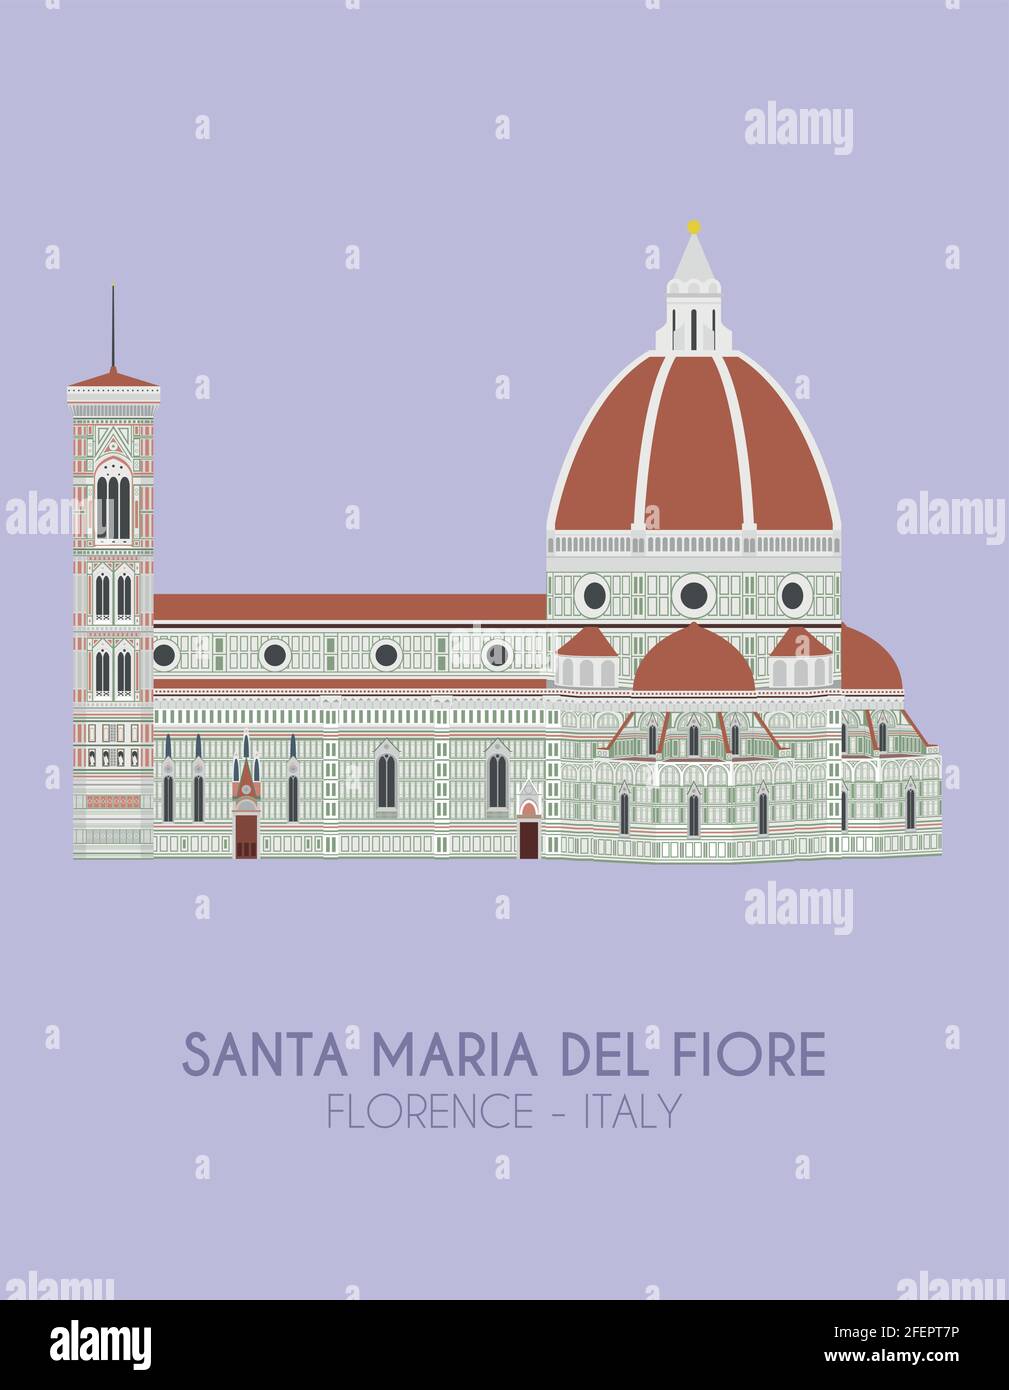 Affiche au design moderne avec fond coloré de Santa Maria del Fiore (Florence, Italie). Illustration vectorielle Illustration de Vecteur